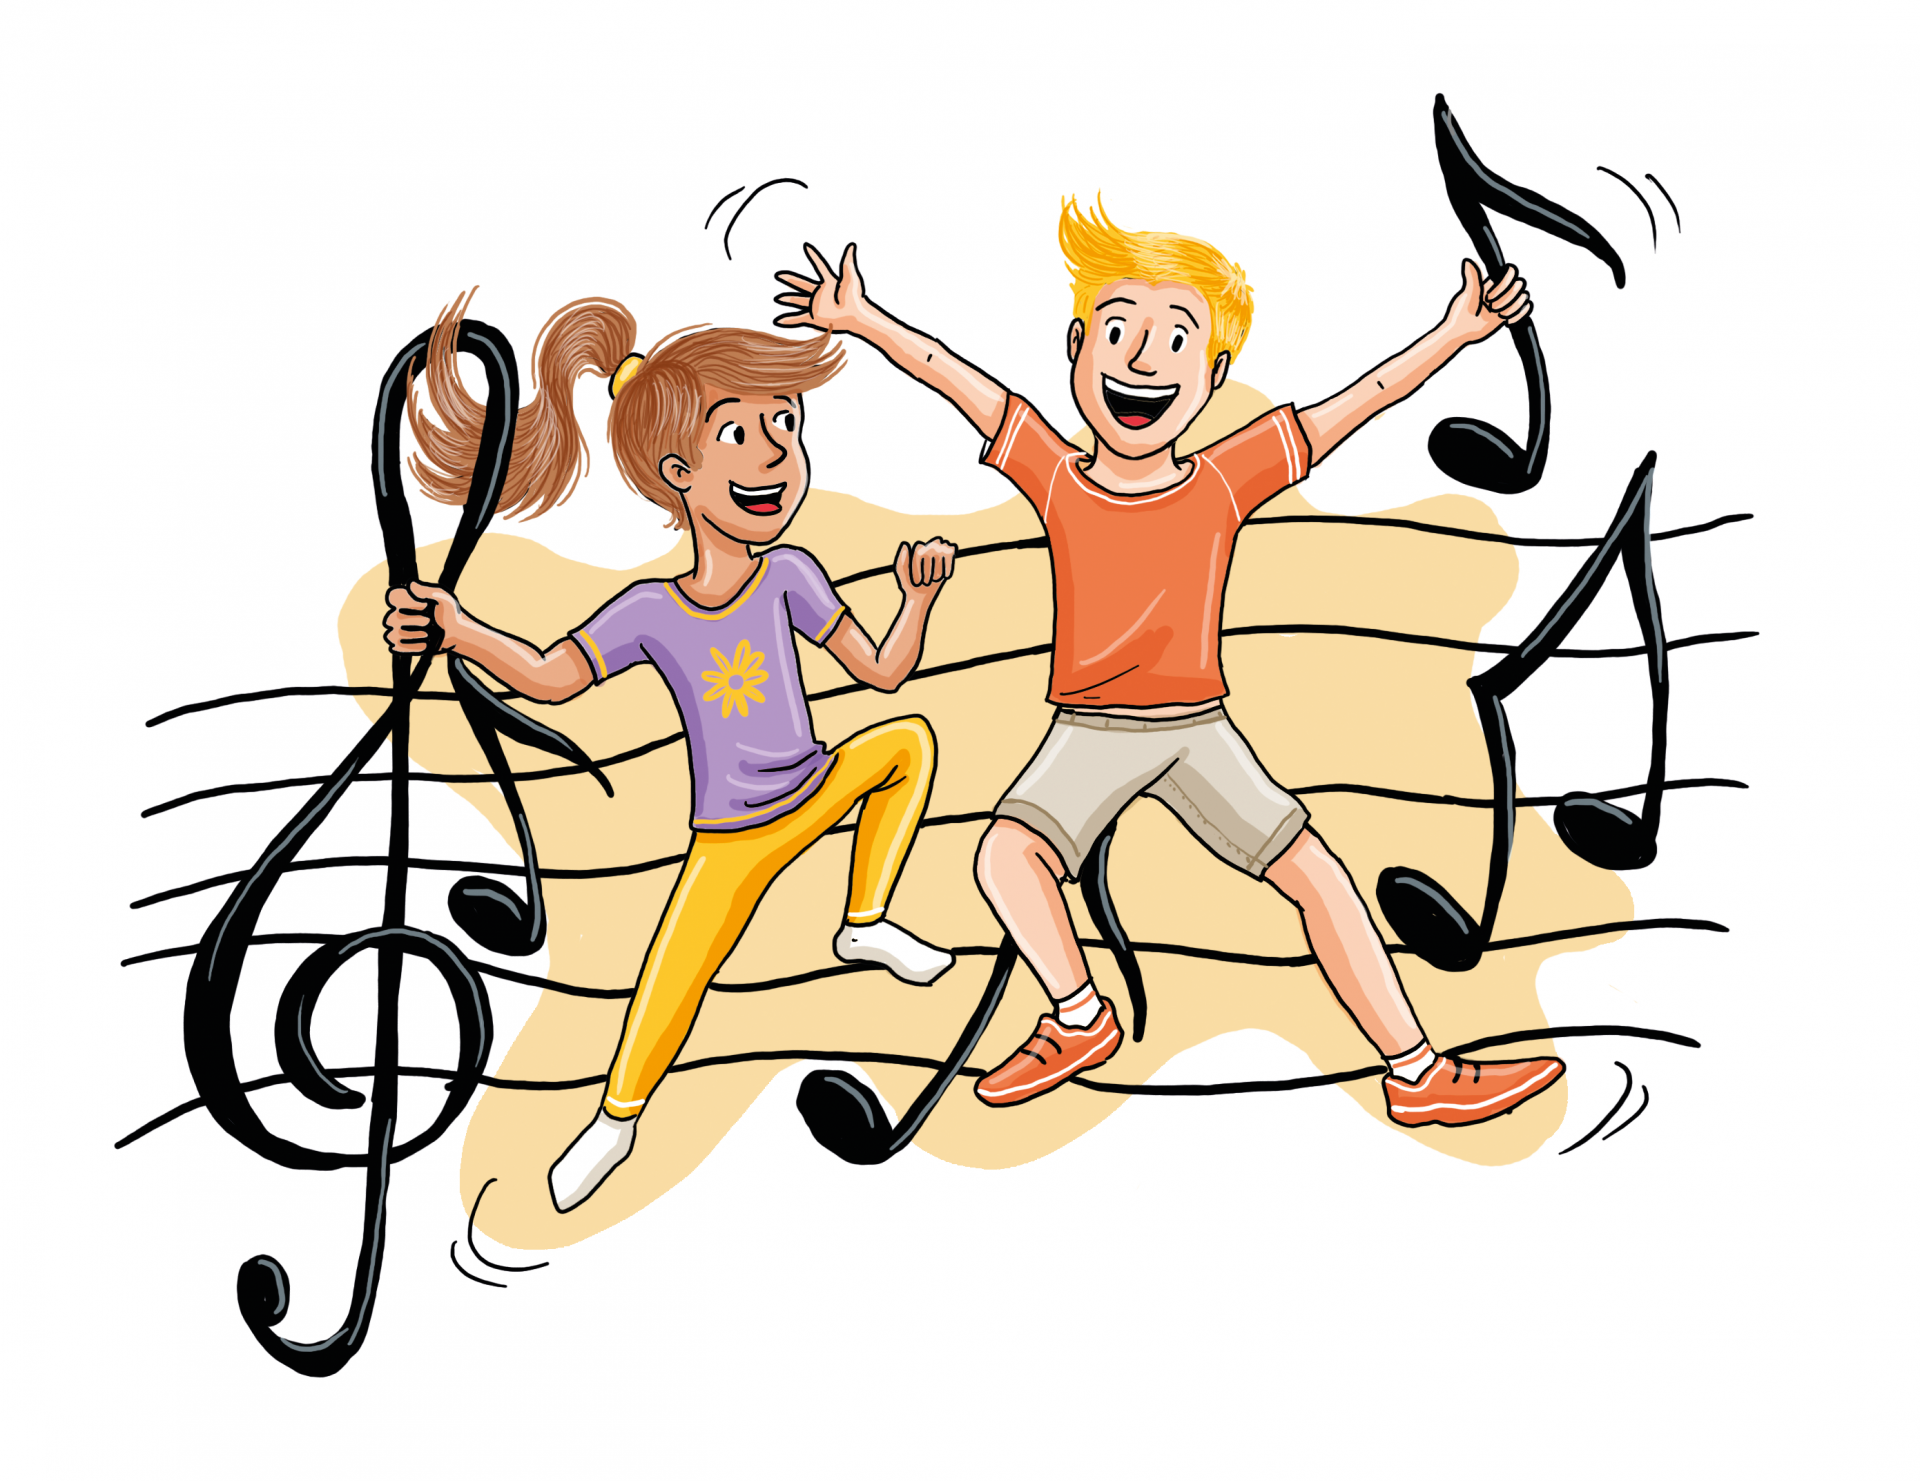 Zeichnung: Zwei Kinder bewegen sich zu Musik.